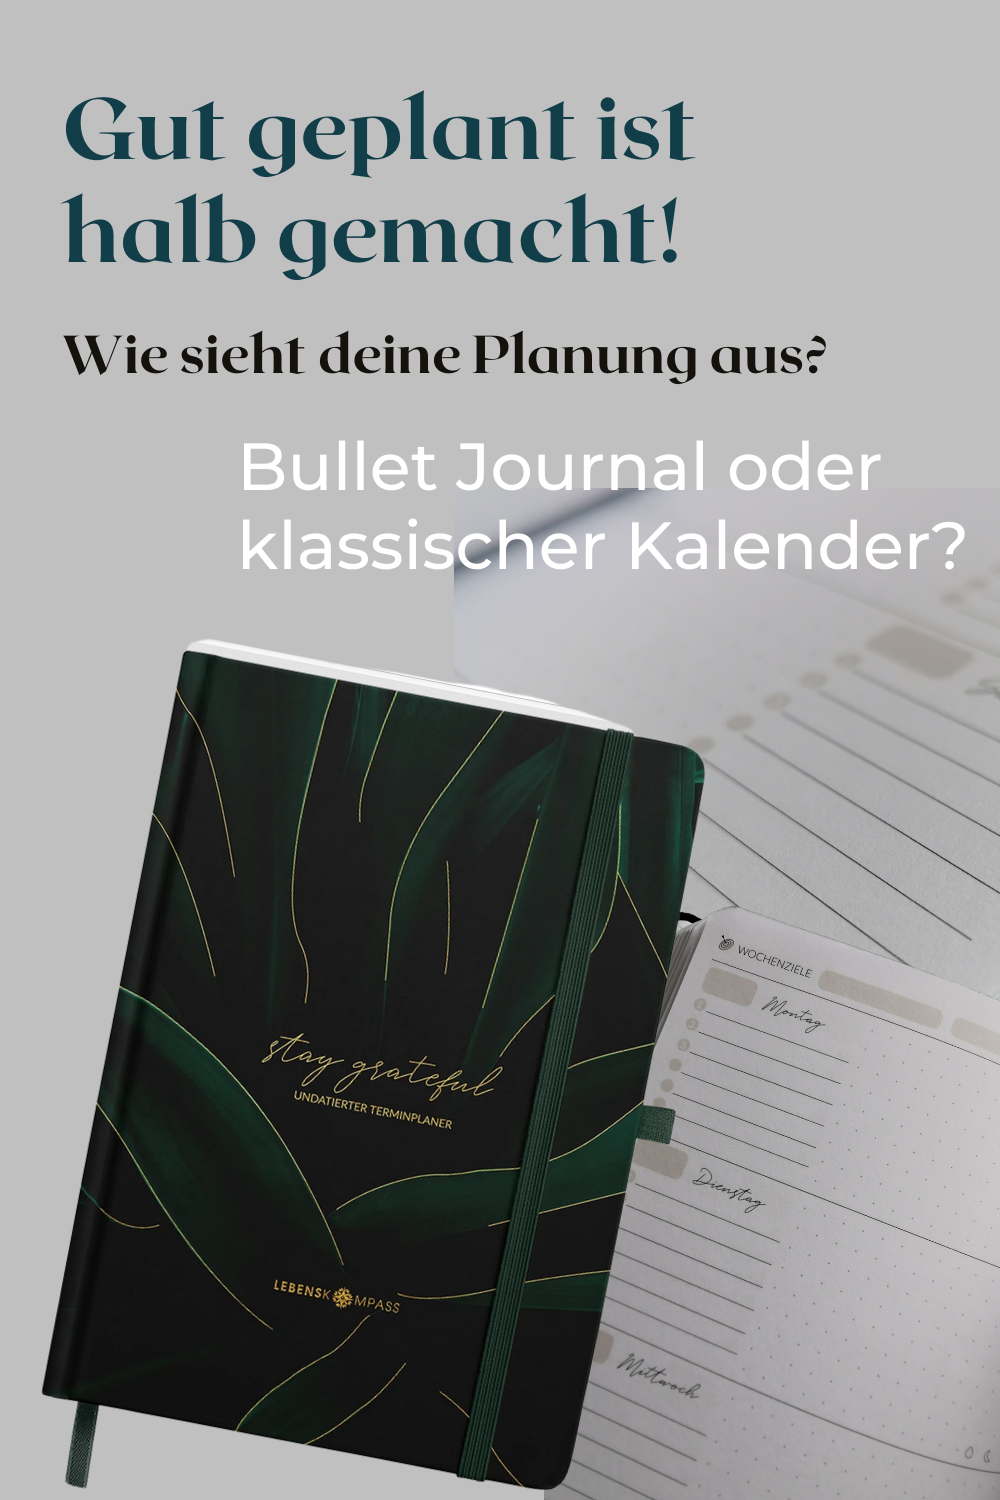 Gut geplant ist halb gemacht! Wie planst du? Mit einem klassischen Kalender oder im Bullet Journal? Die Kalender und auch das Bullet Journal der Firma Lebenskompass machen die Entscheidung echt nicht einfacher, denn beide sind echt schön!